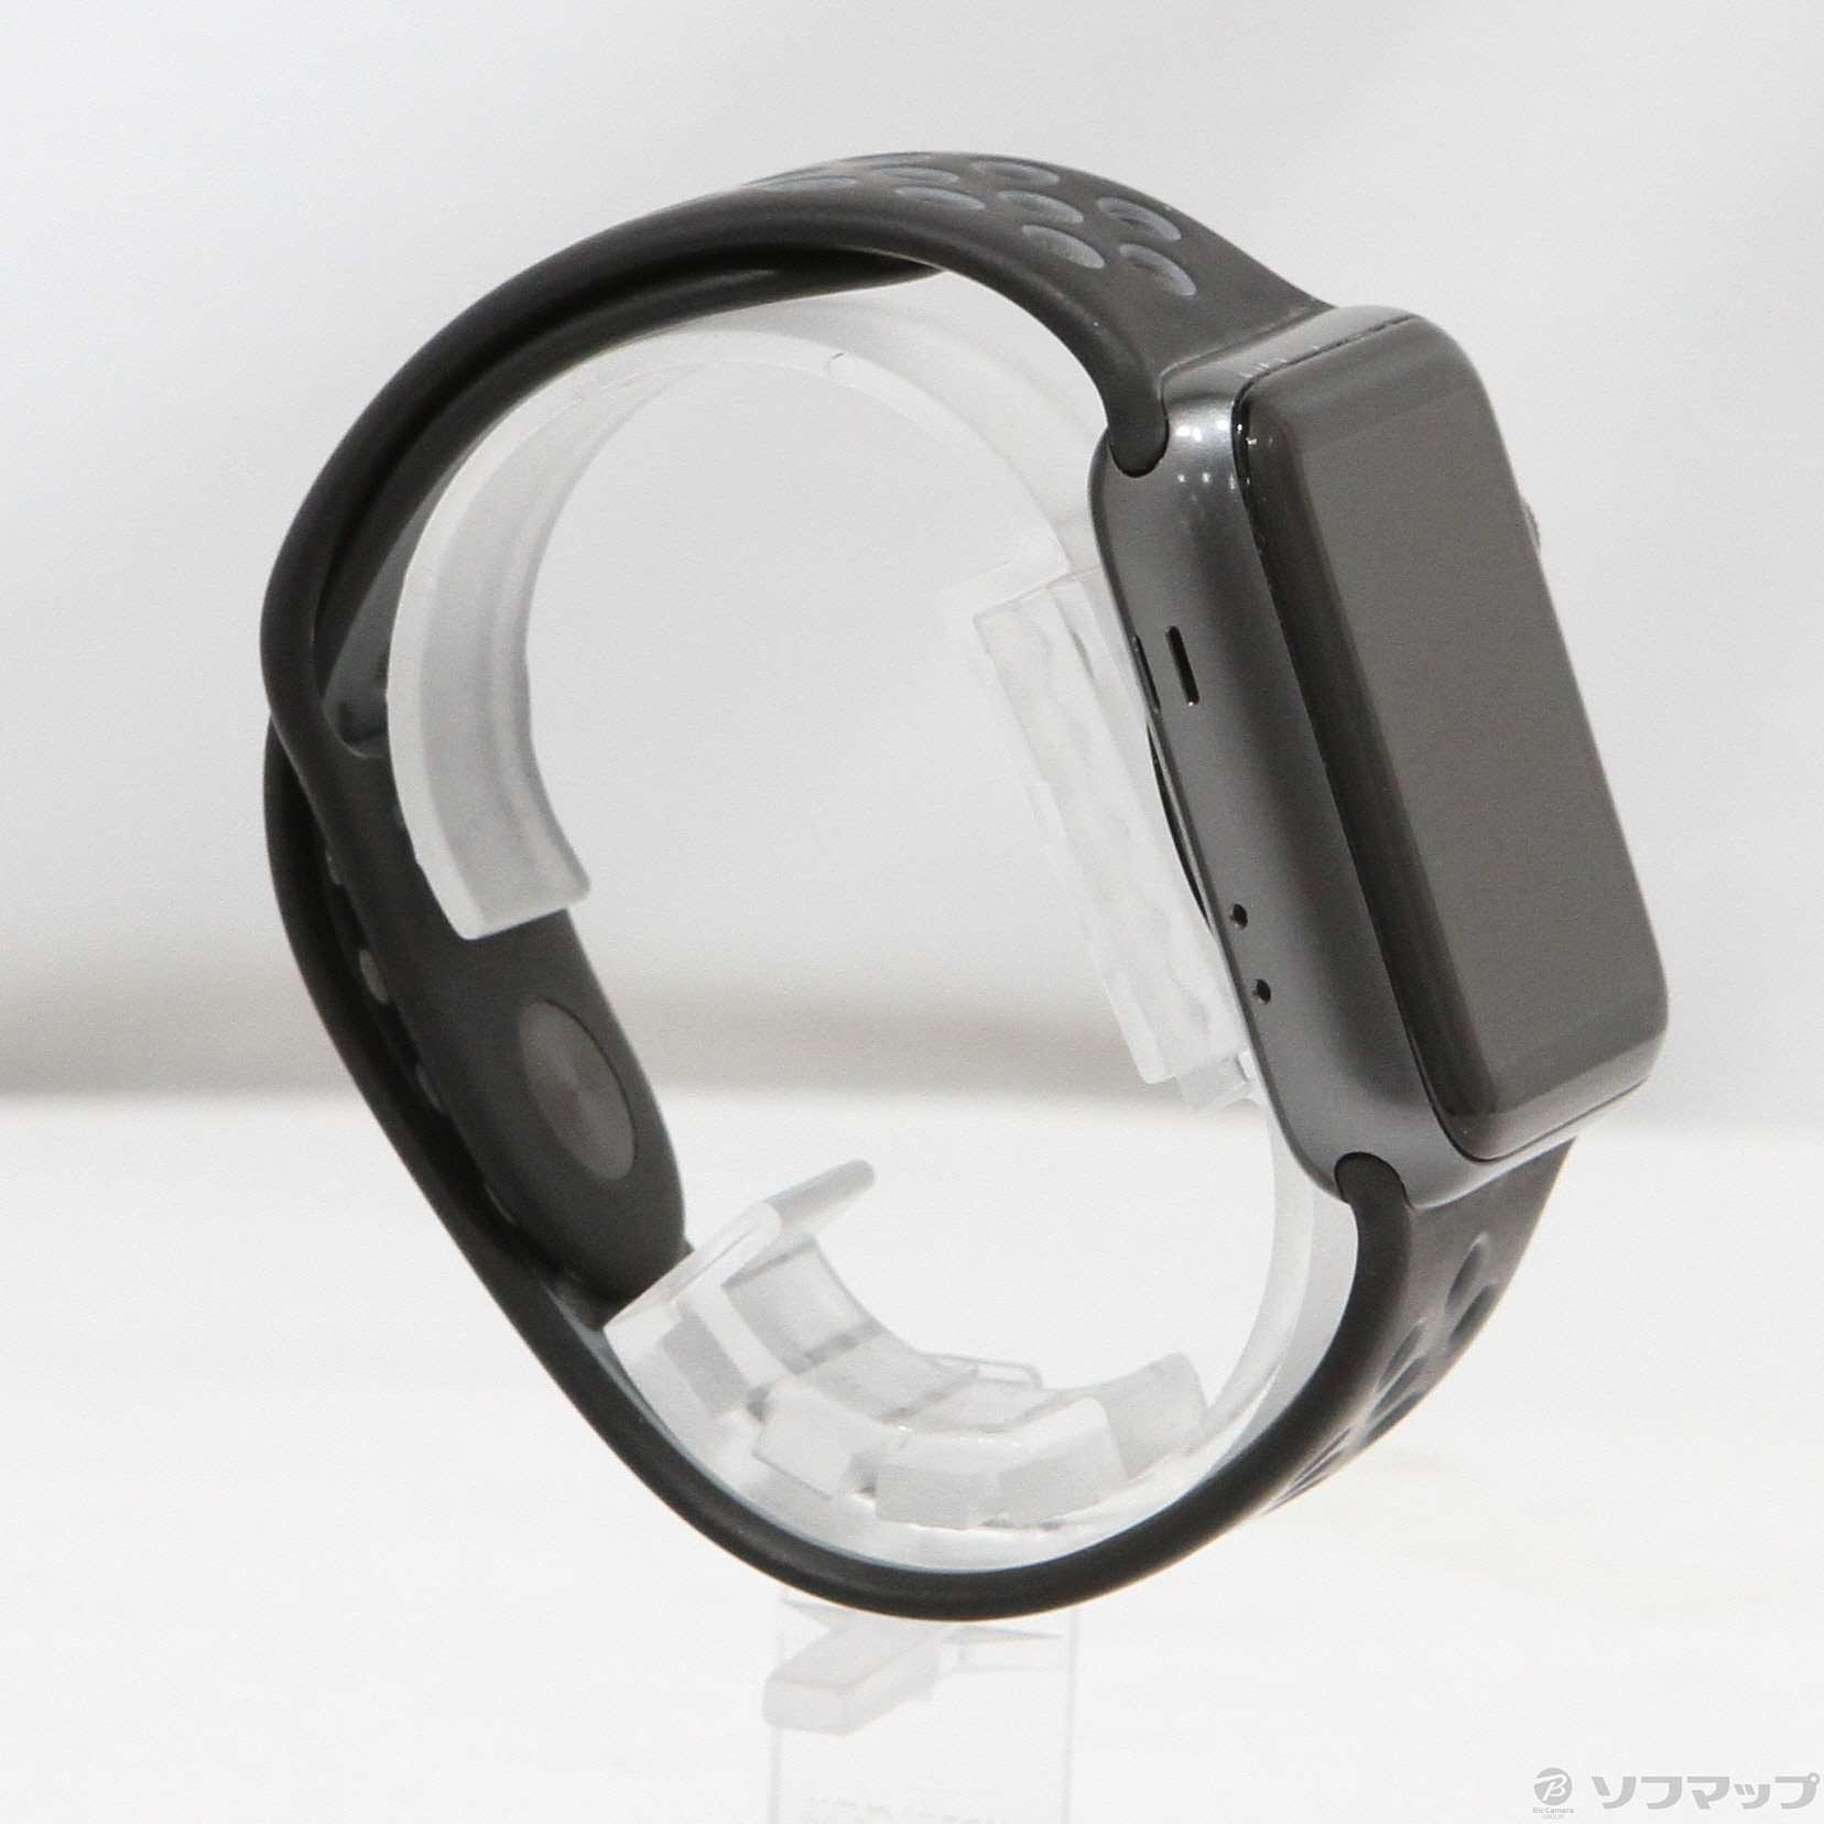 〔中古品〕 Apple Watch Series 2 Nike+ 42mm スペースグレイアルミニウムケース  ブラック／クールグレーNikeスポーツバンド